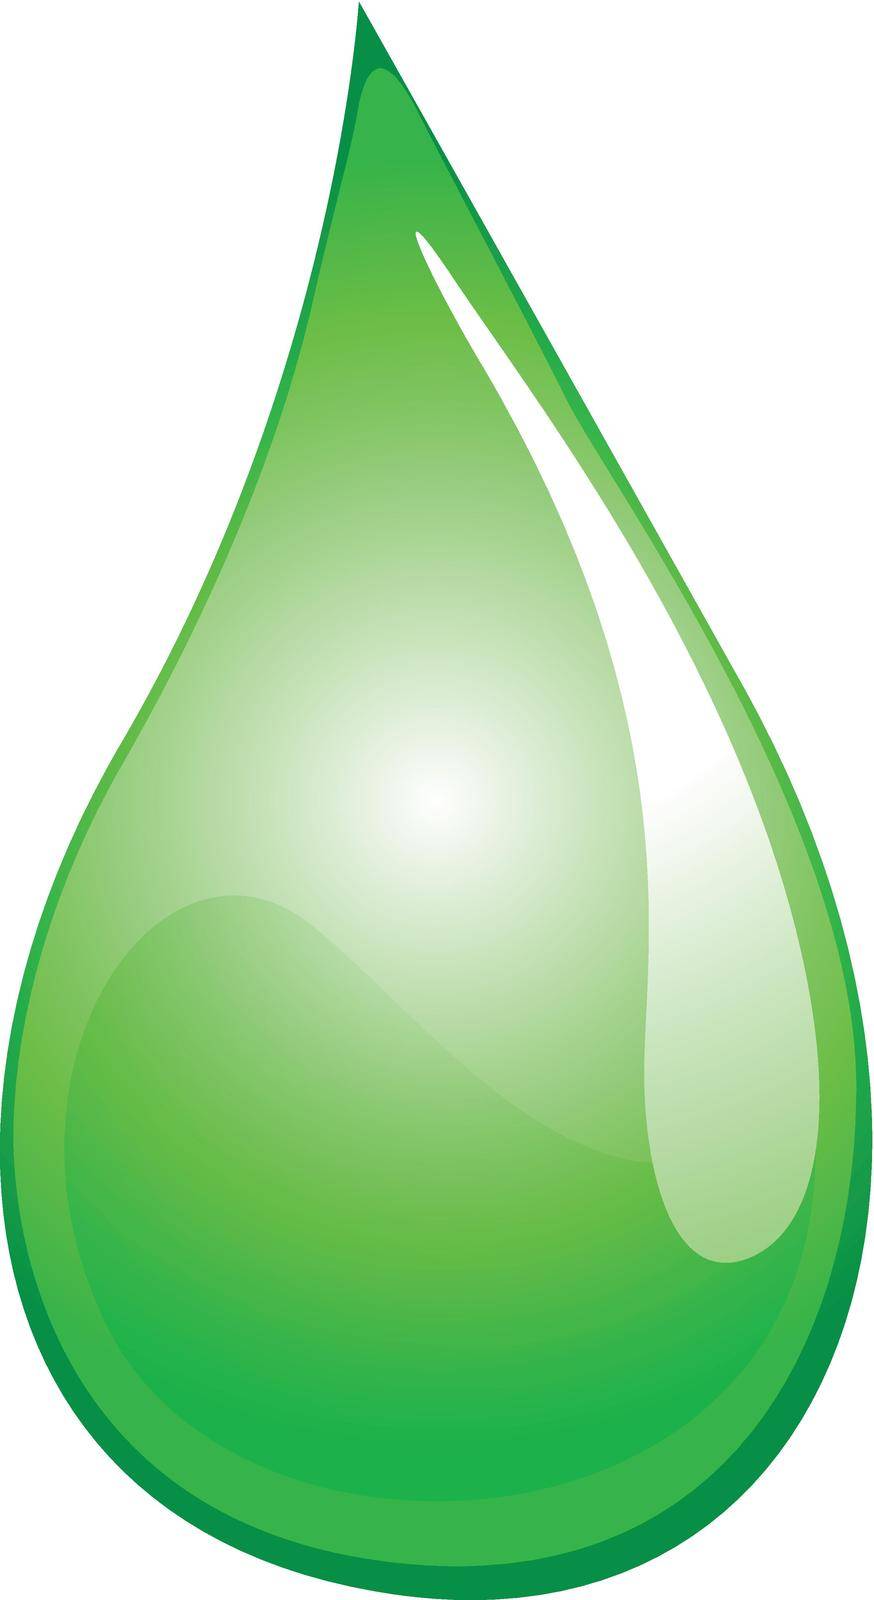 Illustration of a green liquid droplet